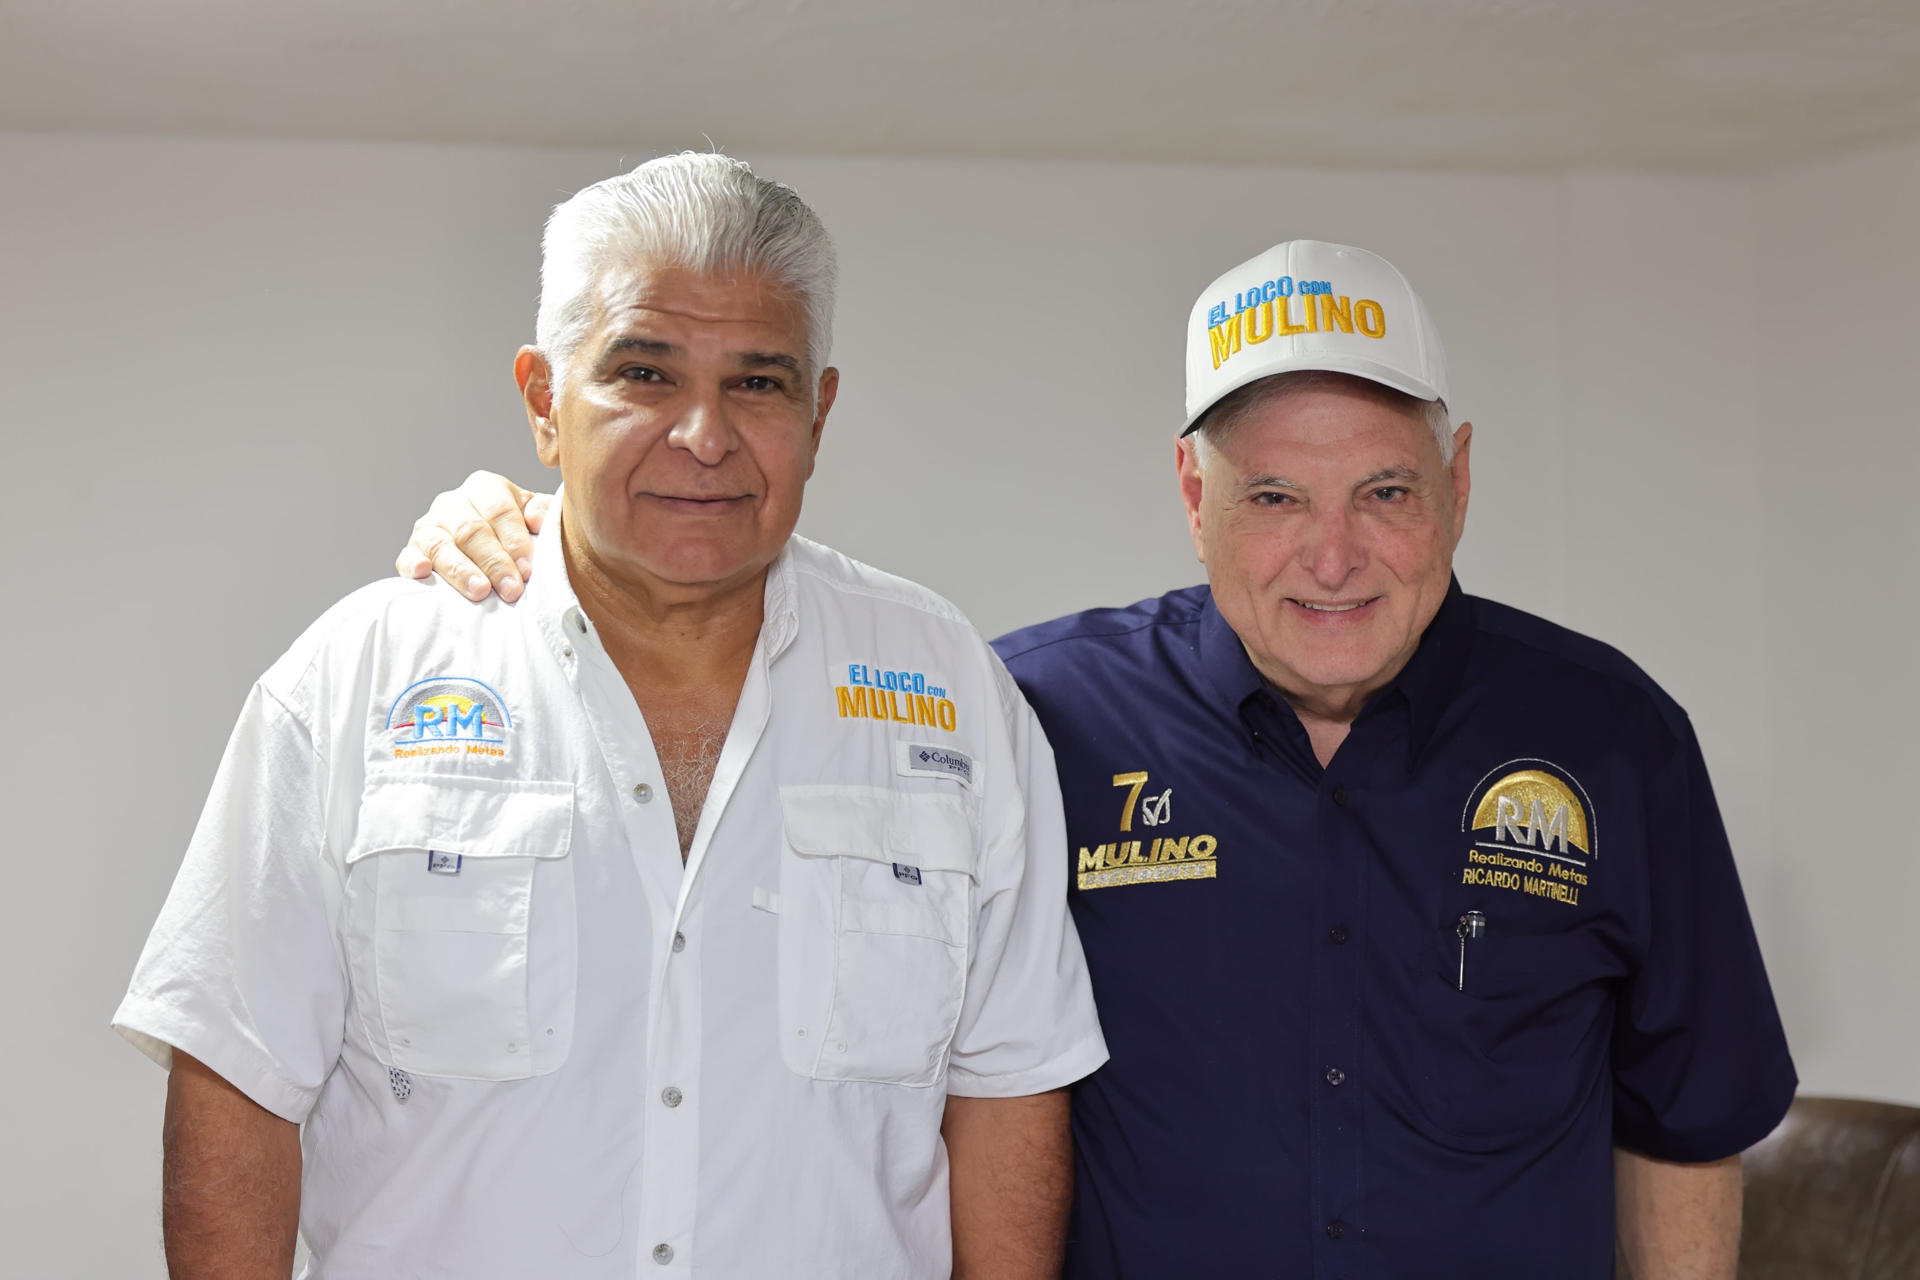 El aspirante a la presidencia de Panamá, José Raúl Mulino, posando junto al expresidente Ricardo Martinelli.